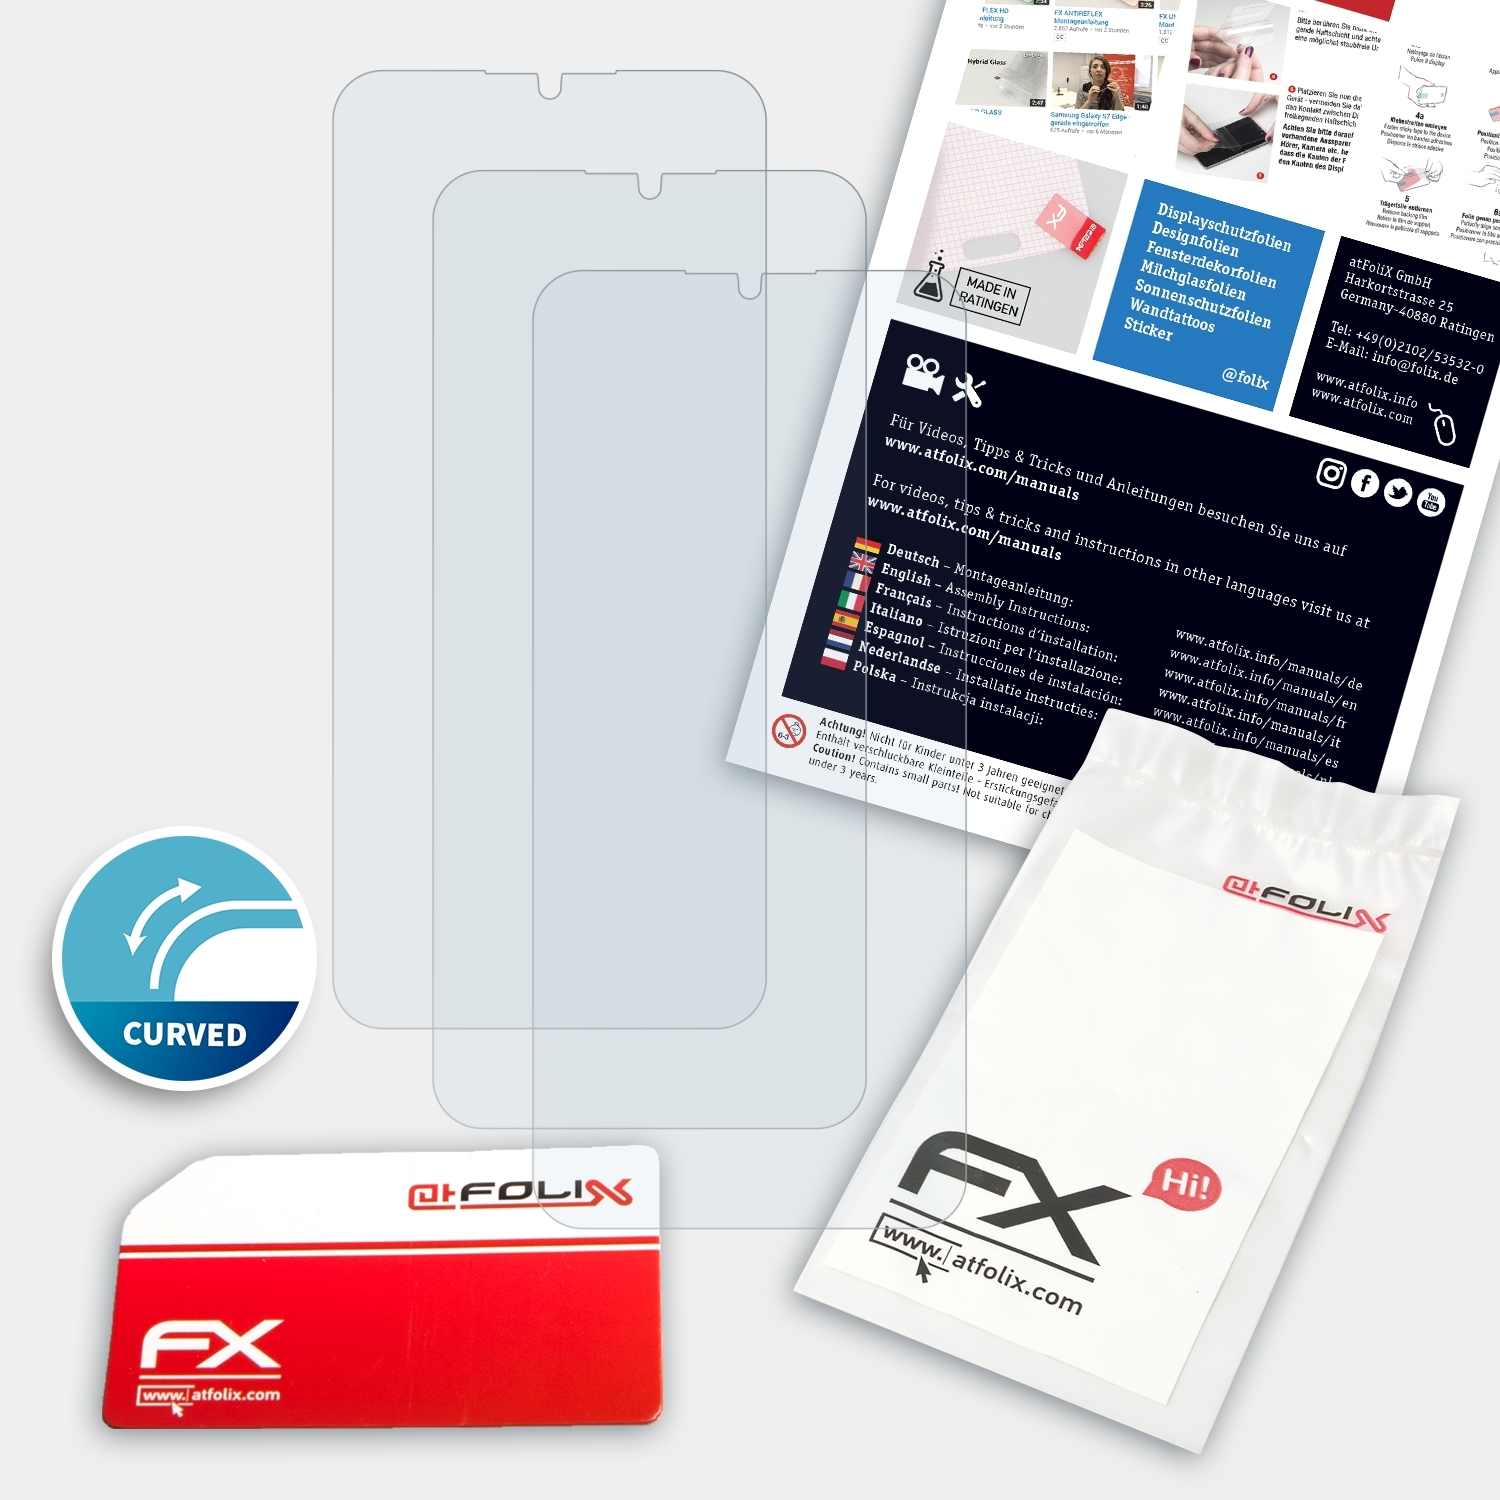 Oppo Displayschutz(für 5 3x Realme ATFOLIX Pro) FX-ActiFleX